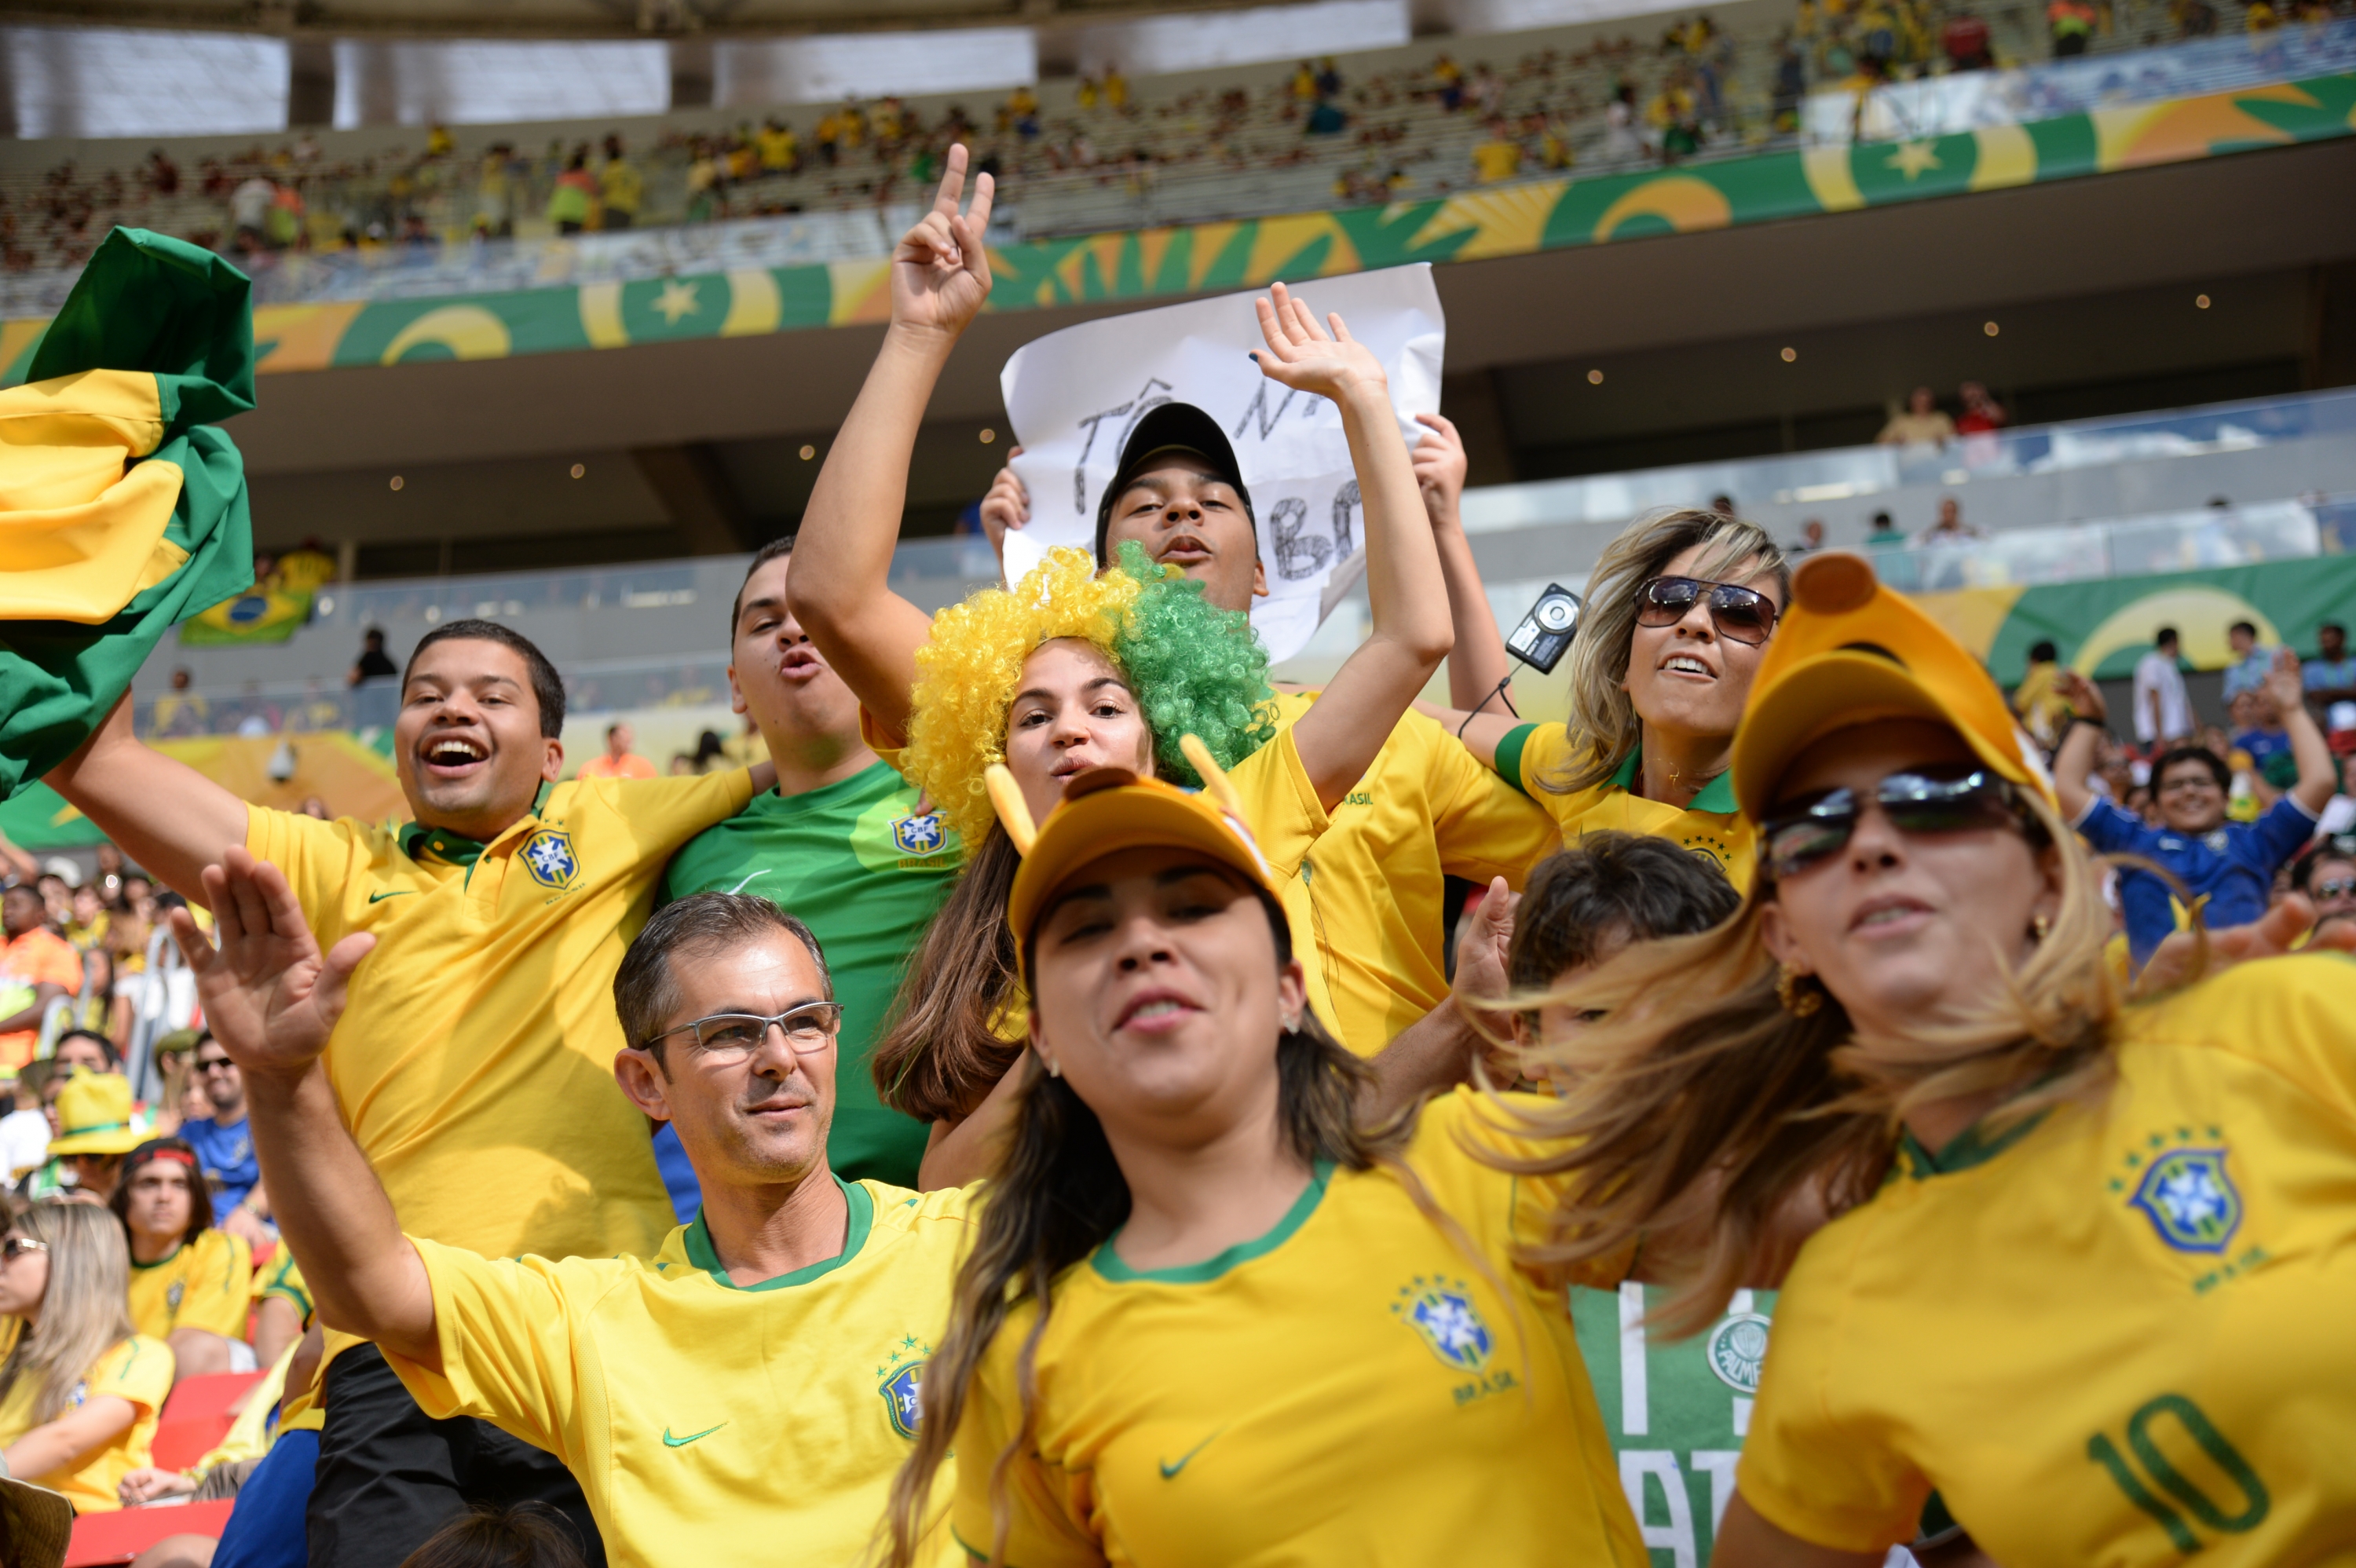 Esportes: Monte seu kit para assistir aos jogos da Copa do Mundo